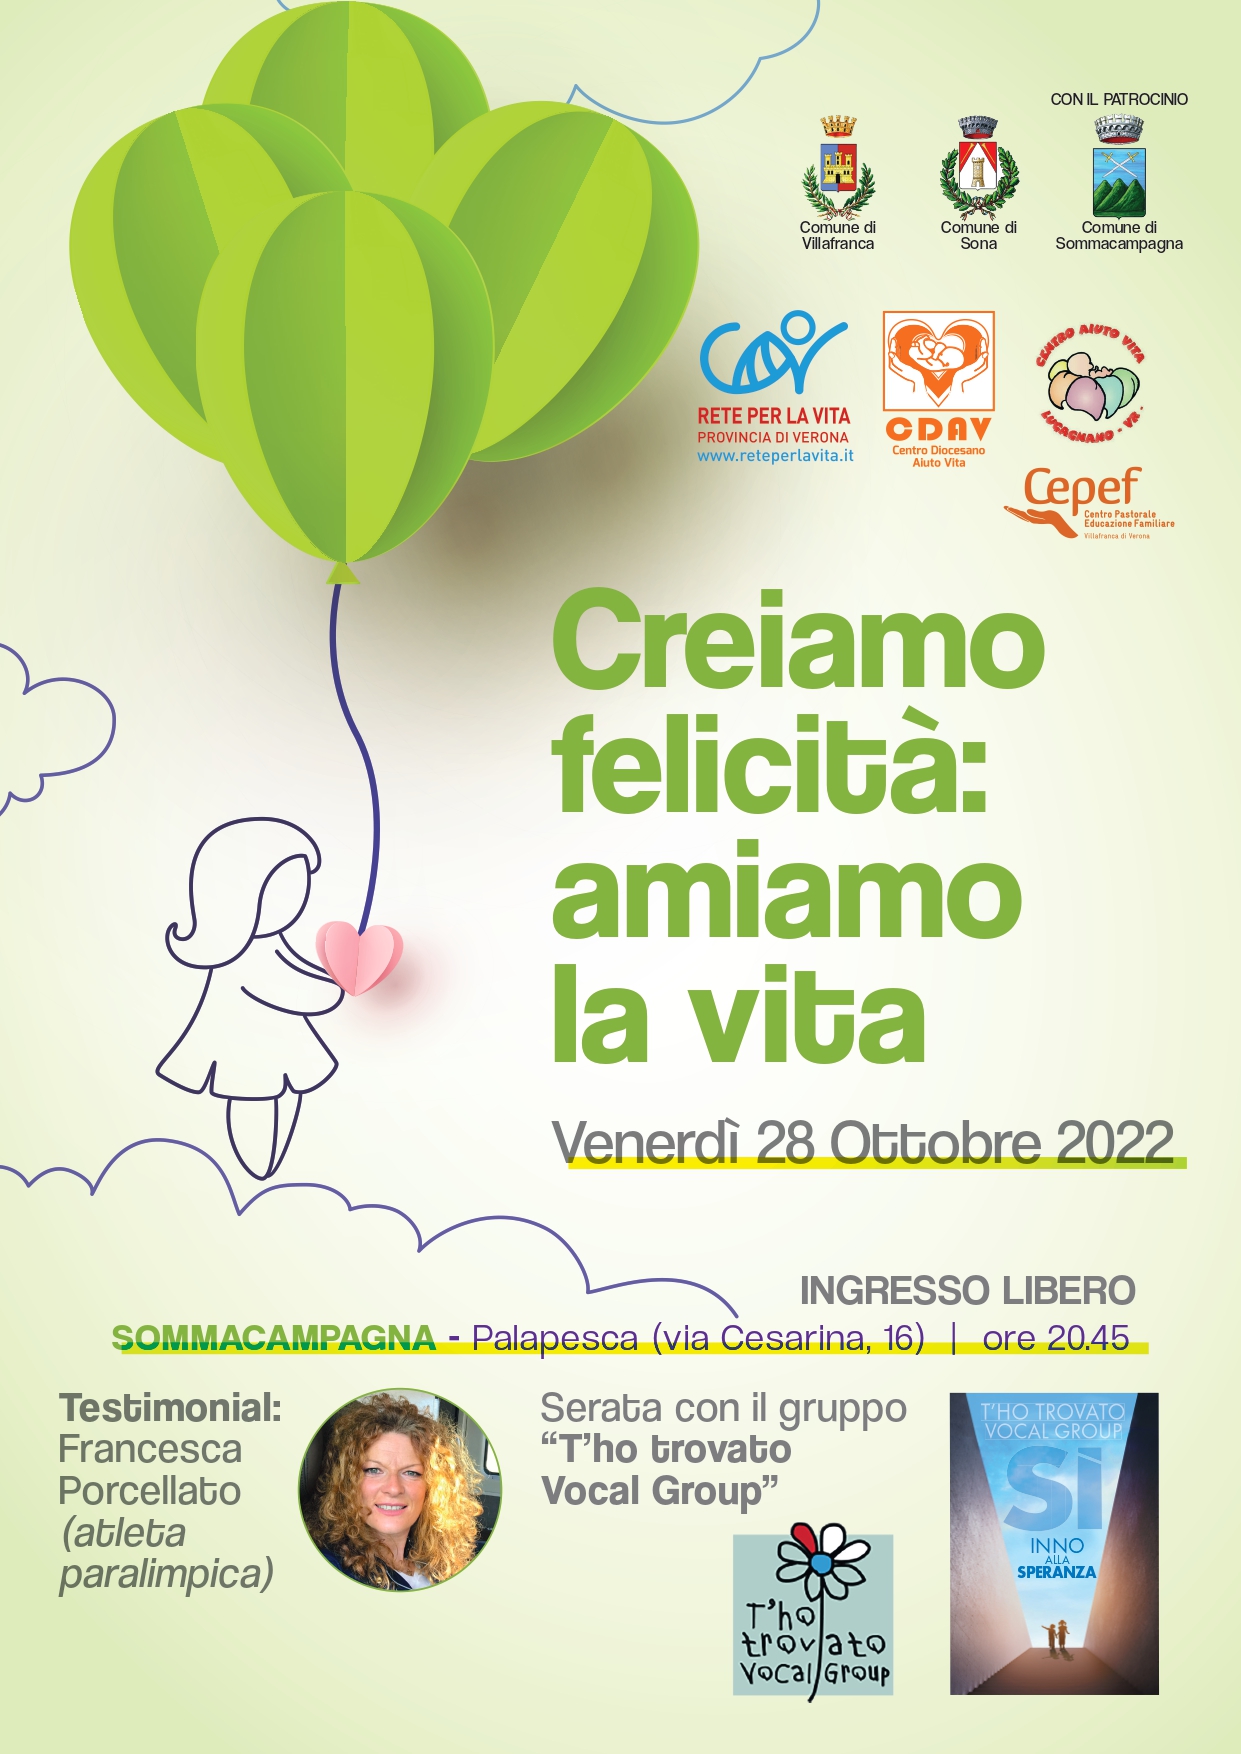 Venerdì sera, al PalaPesca di Sommacampagna, Francesca Porcellato all’evento dei Centri aiuto vita